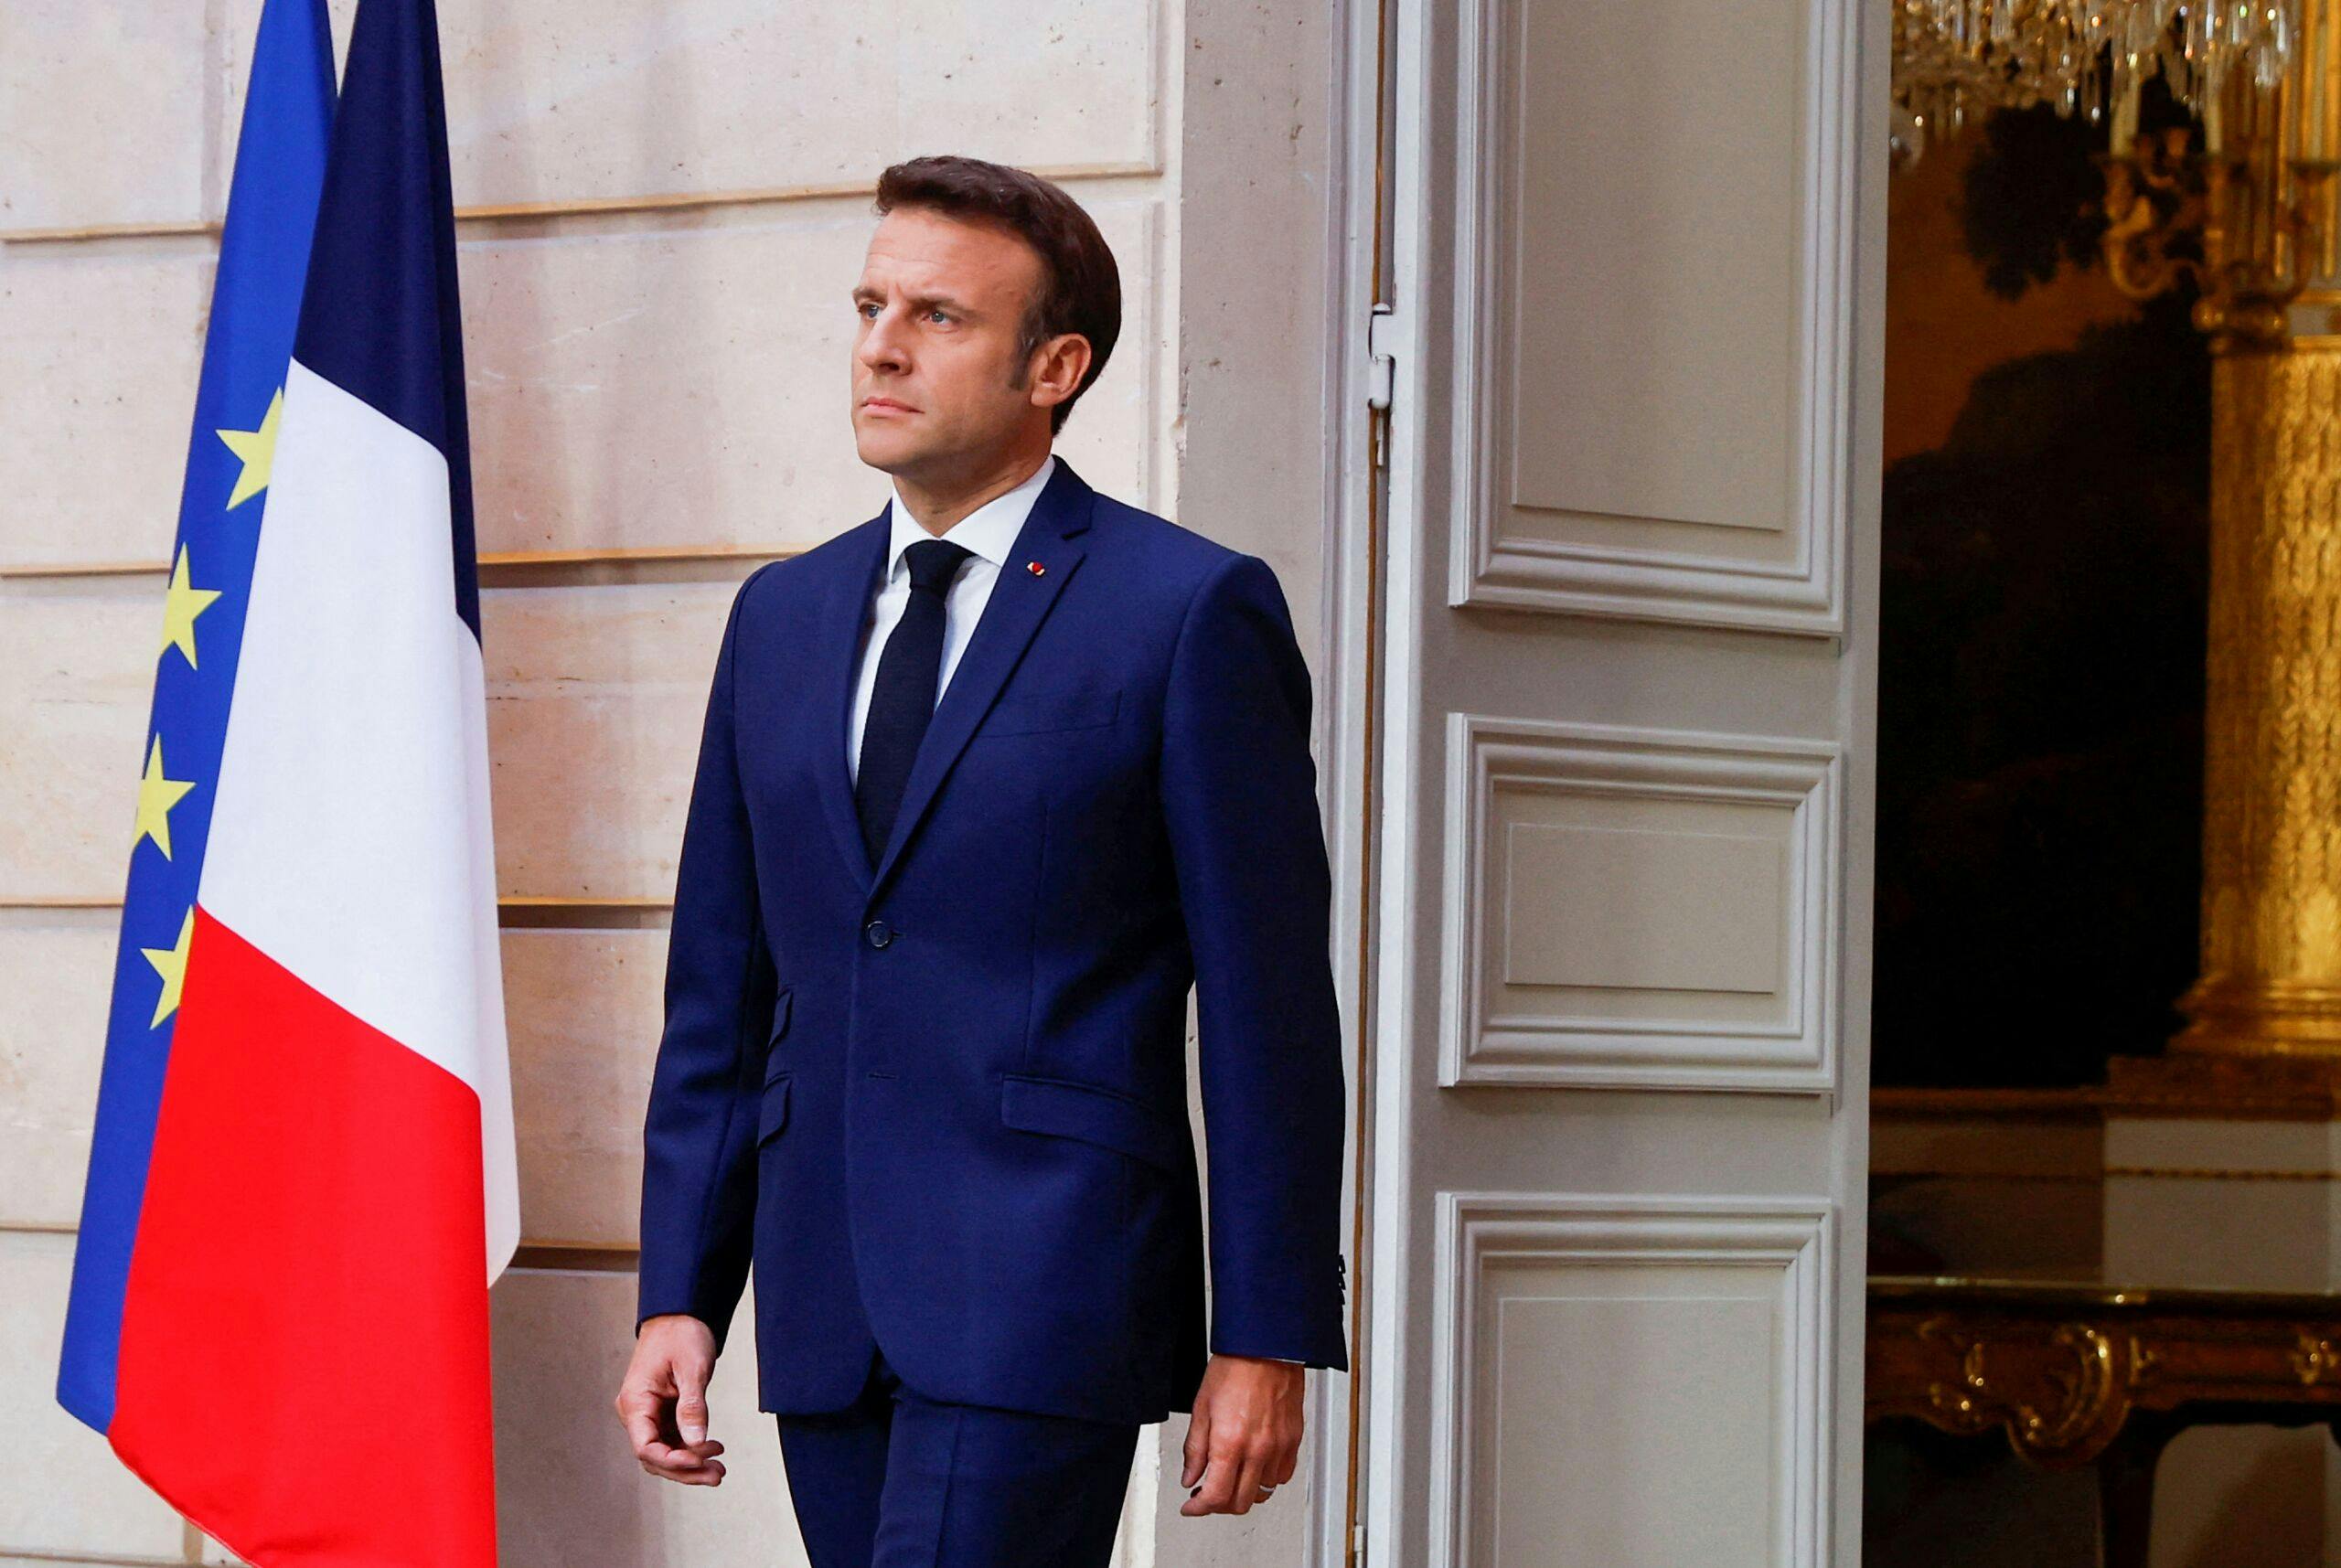 Le président français Macron a officiellement prêté serment pour son second mandat